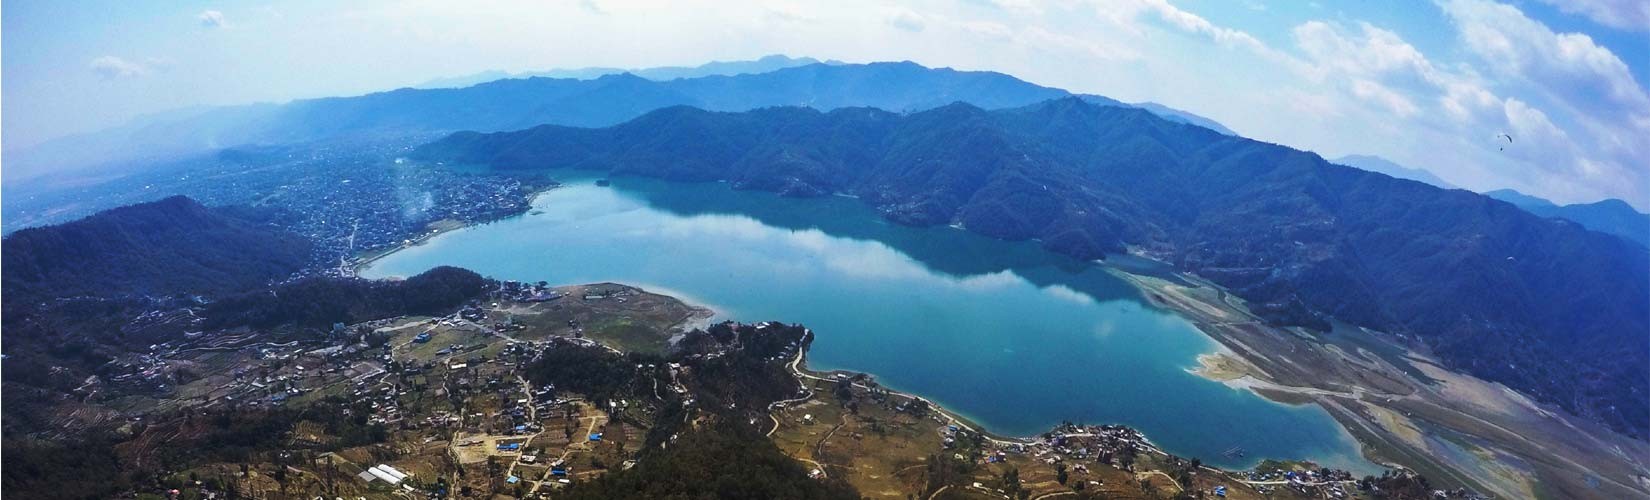 Pokhara City with Phewa Lake